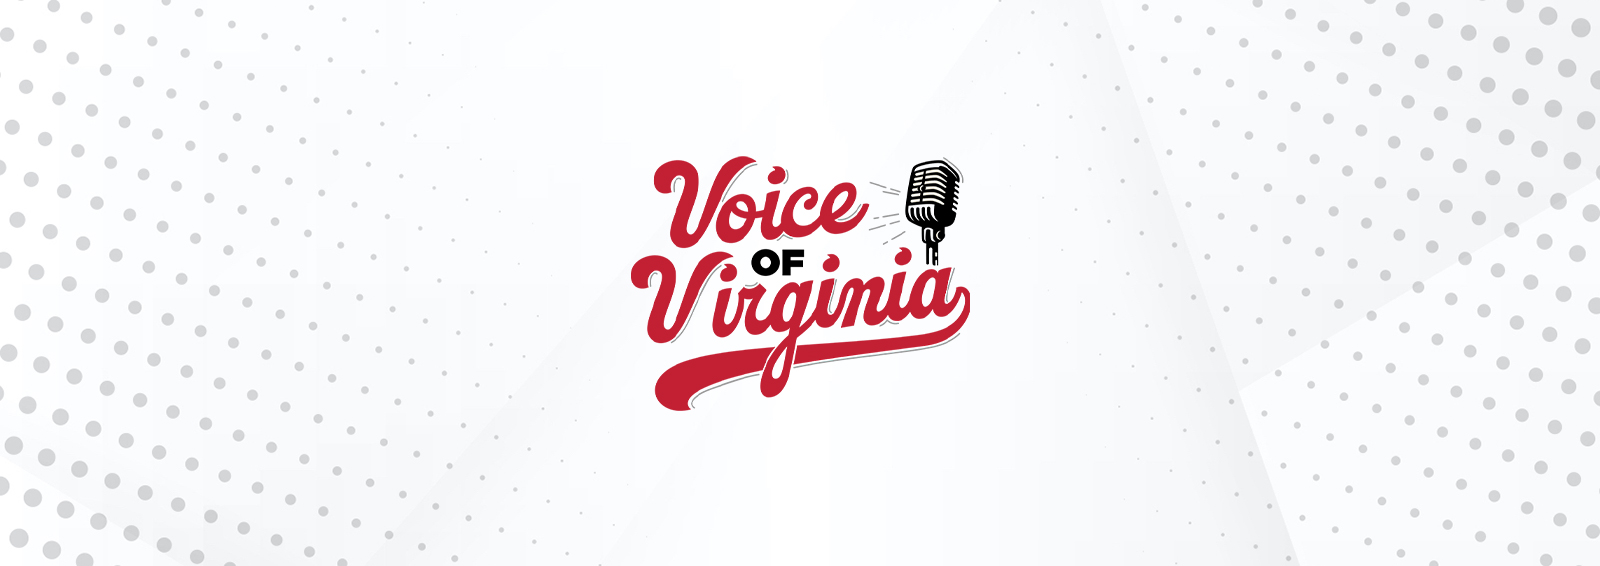 Voice of Virginia